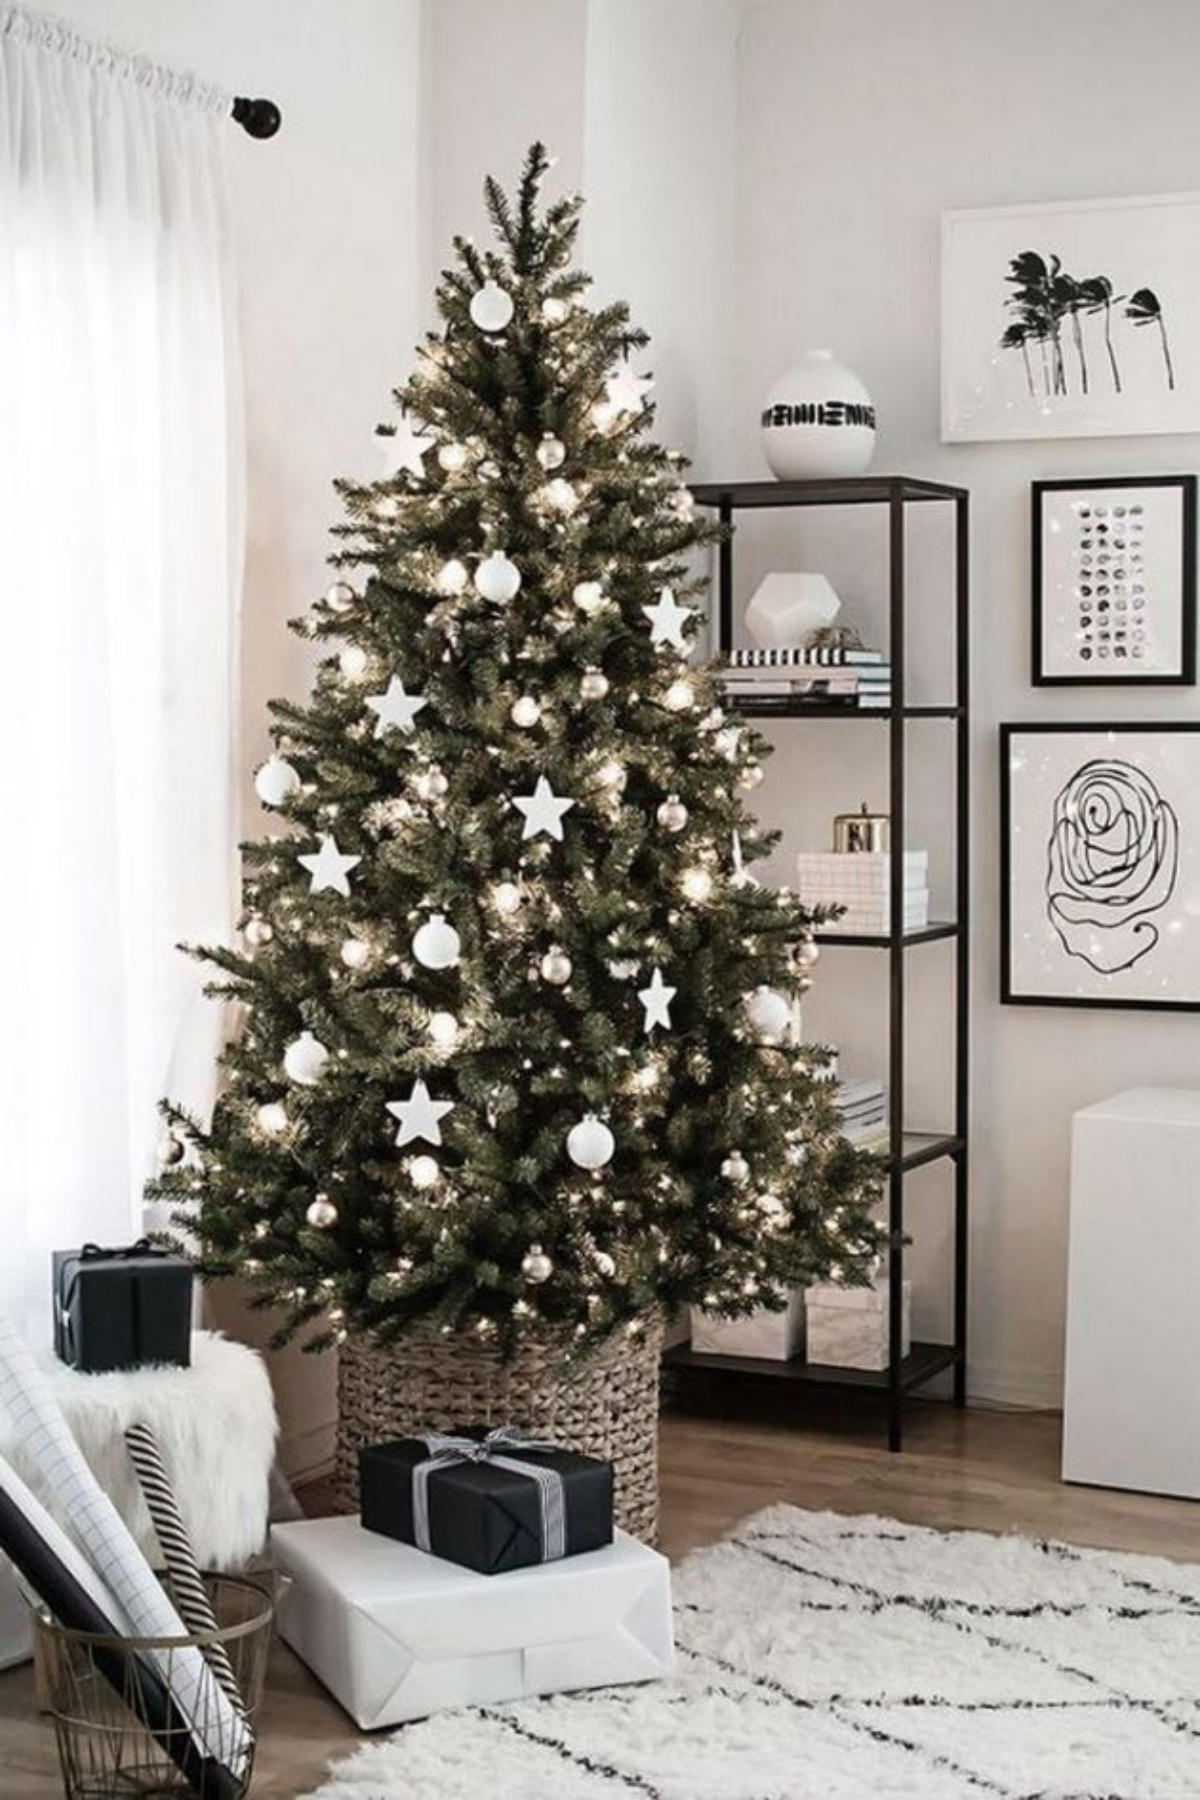 albero di natale addobbato con ornamenti di colore bianco